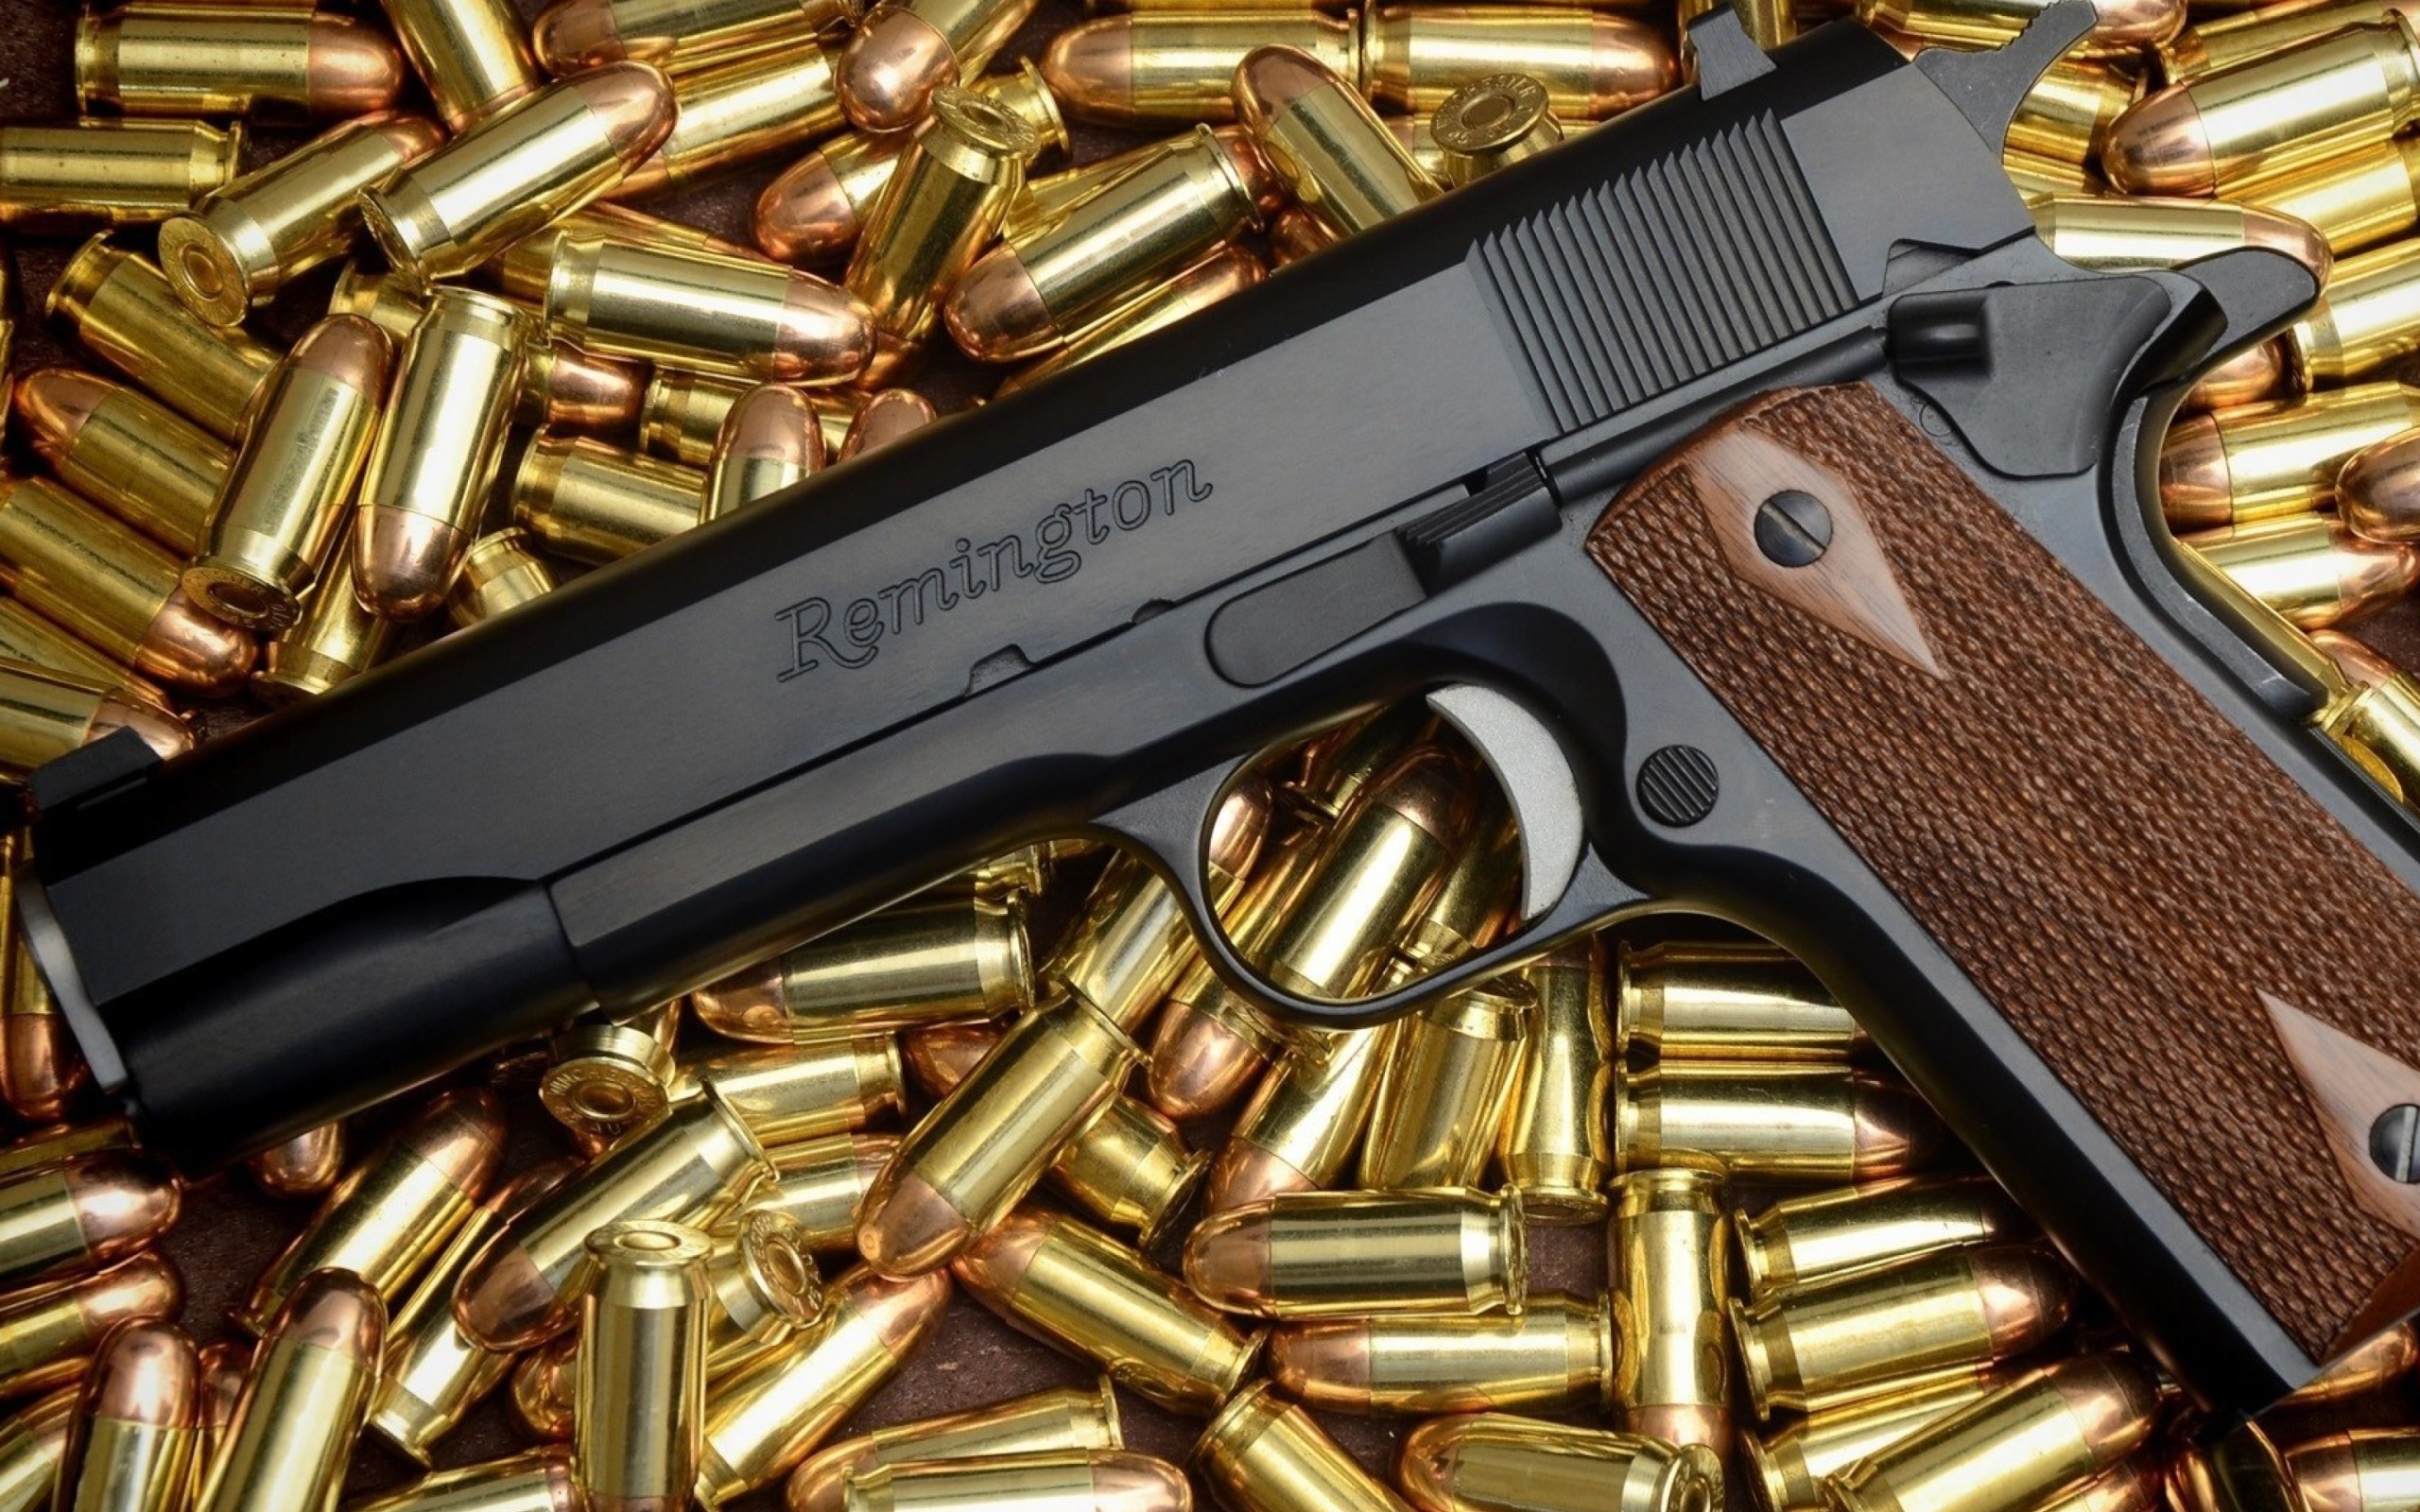 Обои Pistol Remington 2560x1600